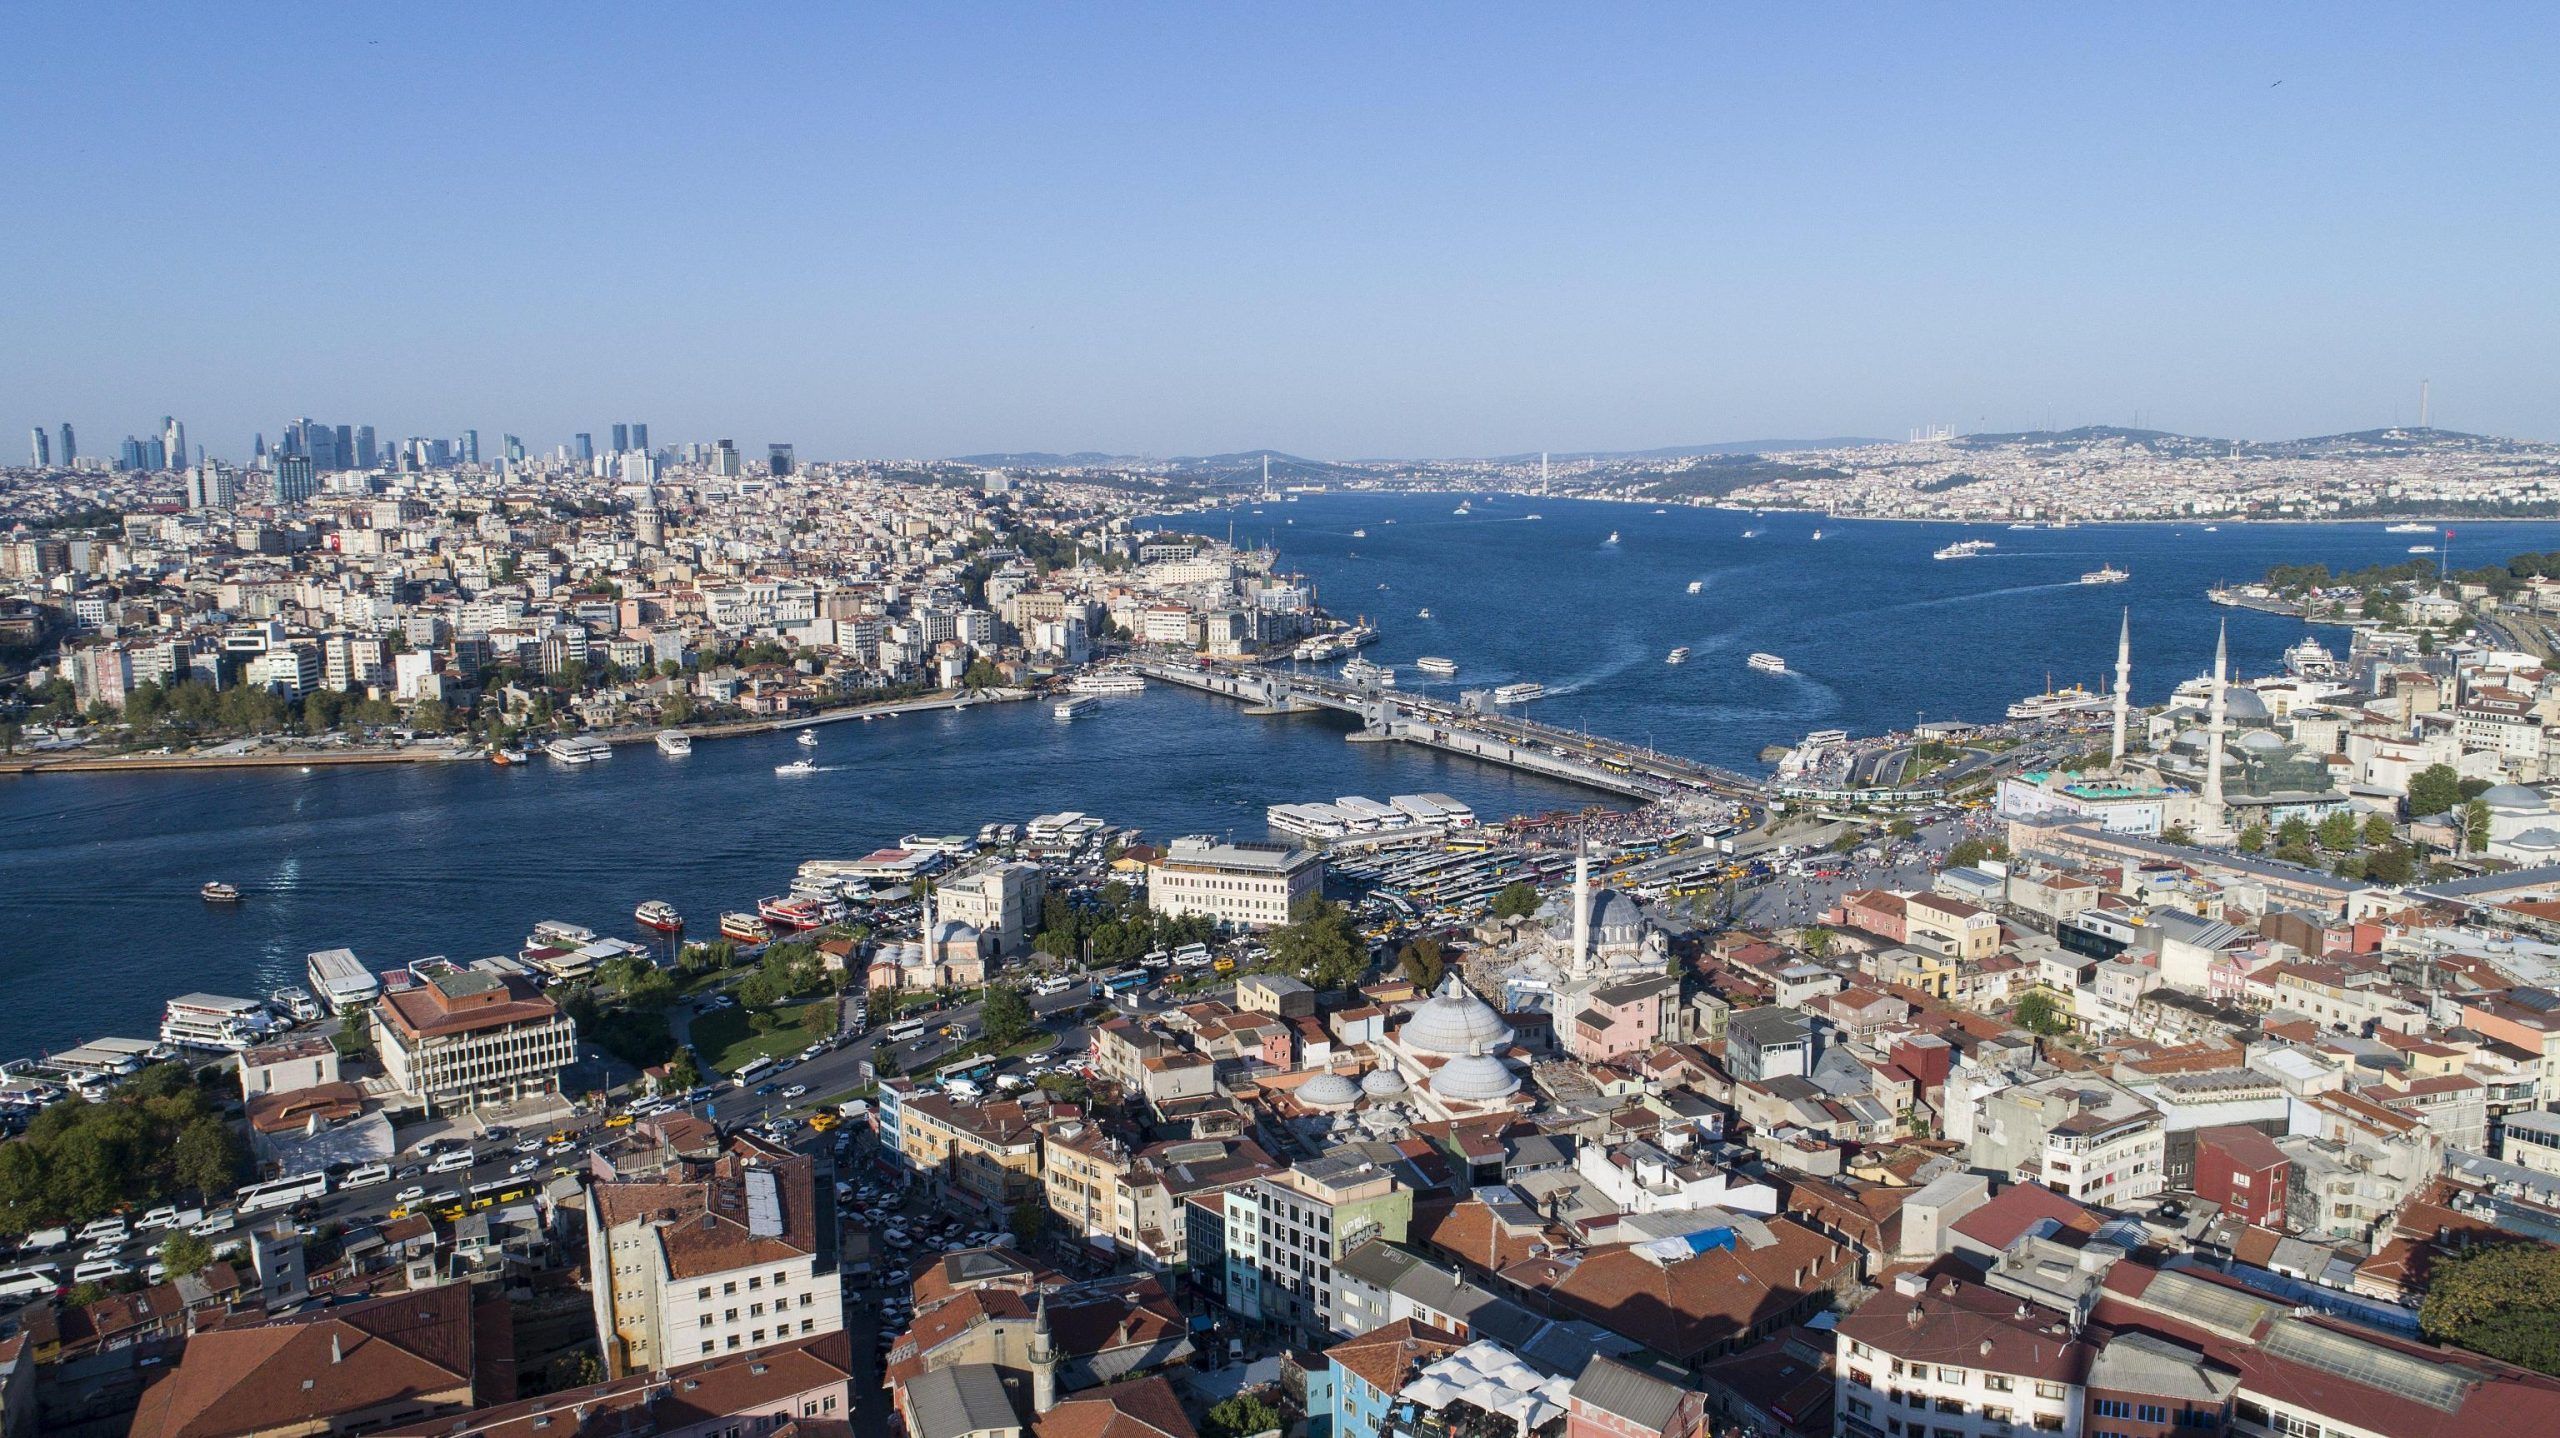 Aerial view of Bosphorus in Istanbul